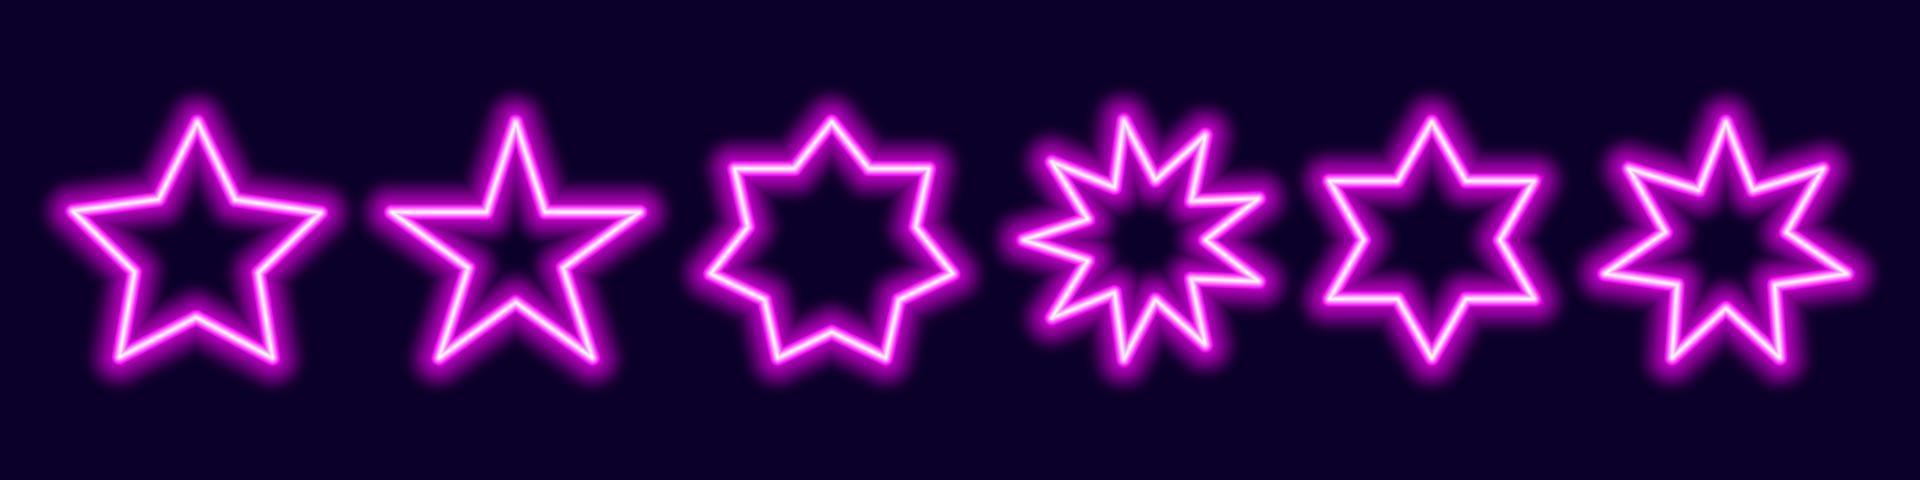 estrellas poligonales de neón. pentágonos morados y figuras multihaz con destellos nocturnos. fiestas de ondas sintéticas láser y símbolo de señalización en estilo vectorial retro de moda. vector